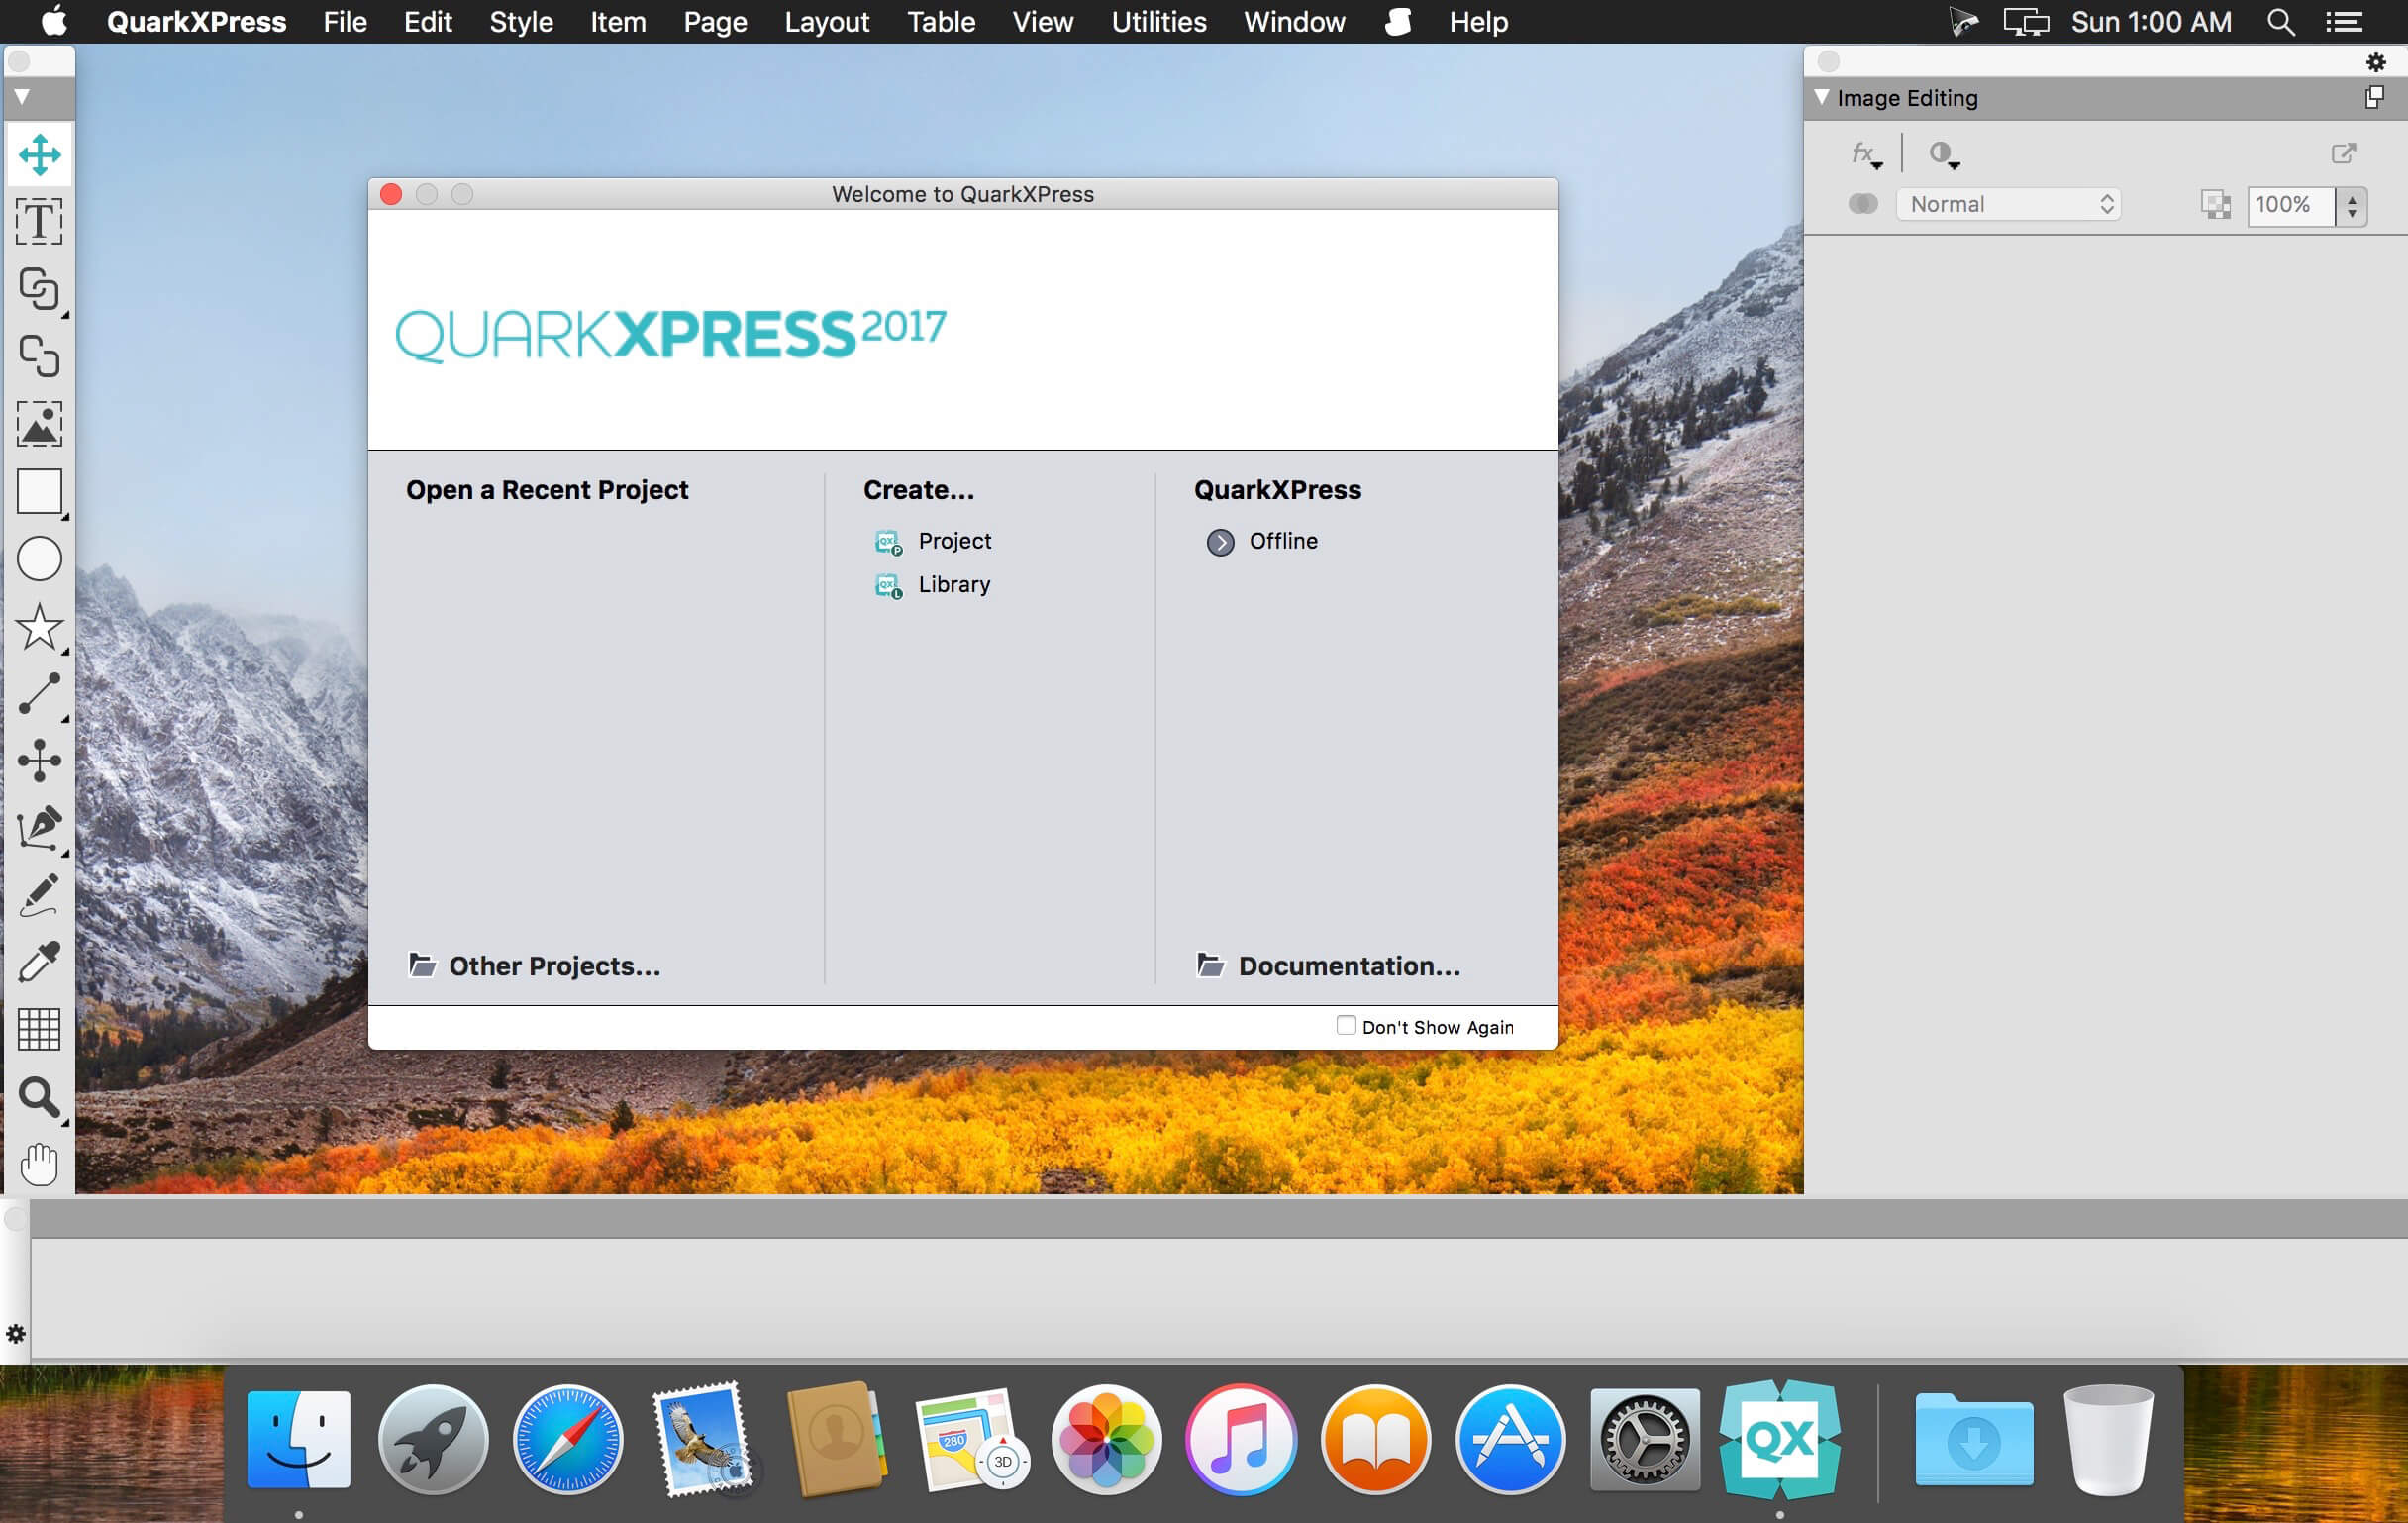 QuarkXPress 2023 v19.2.55821 for apple download free